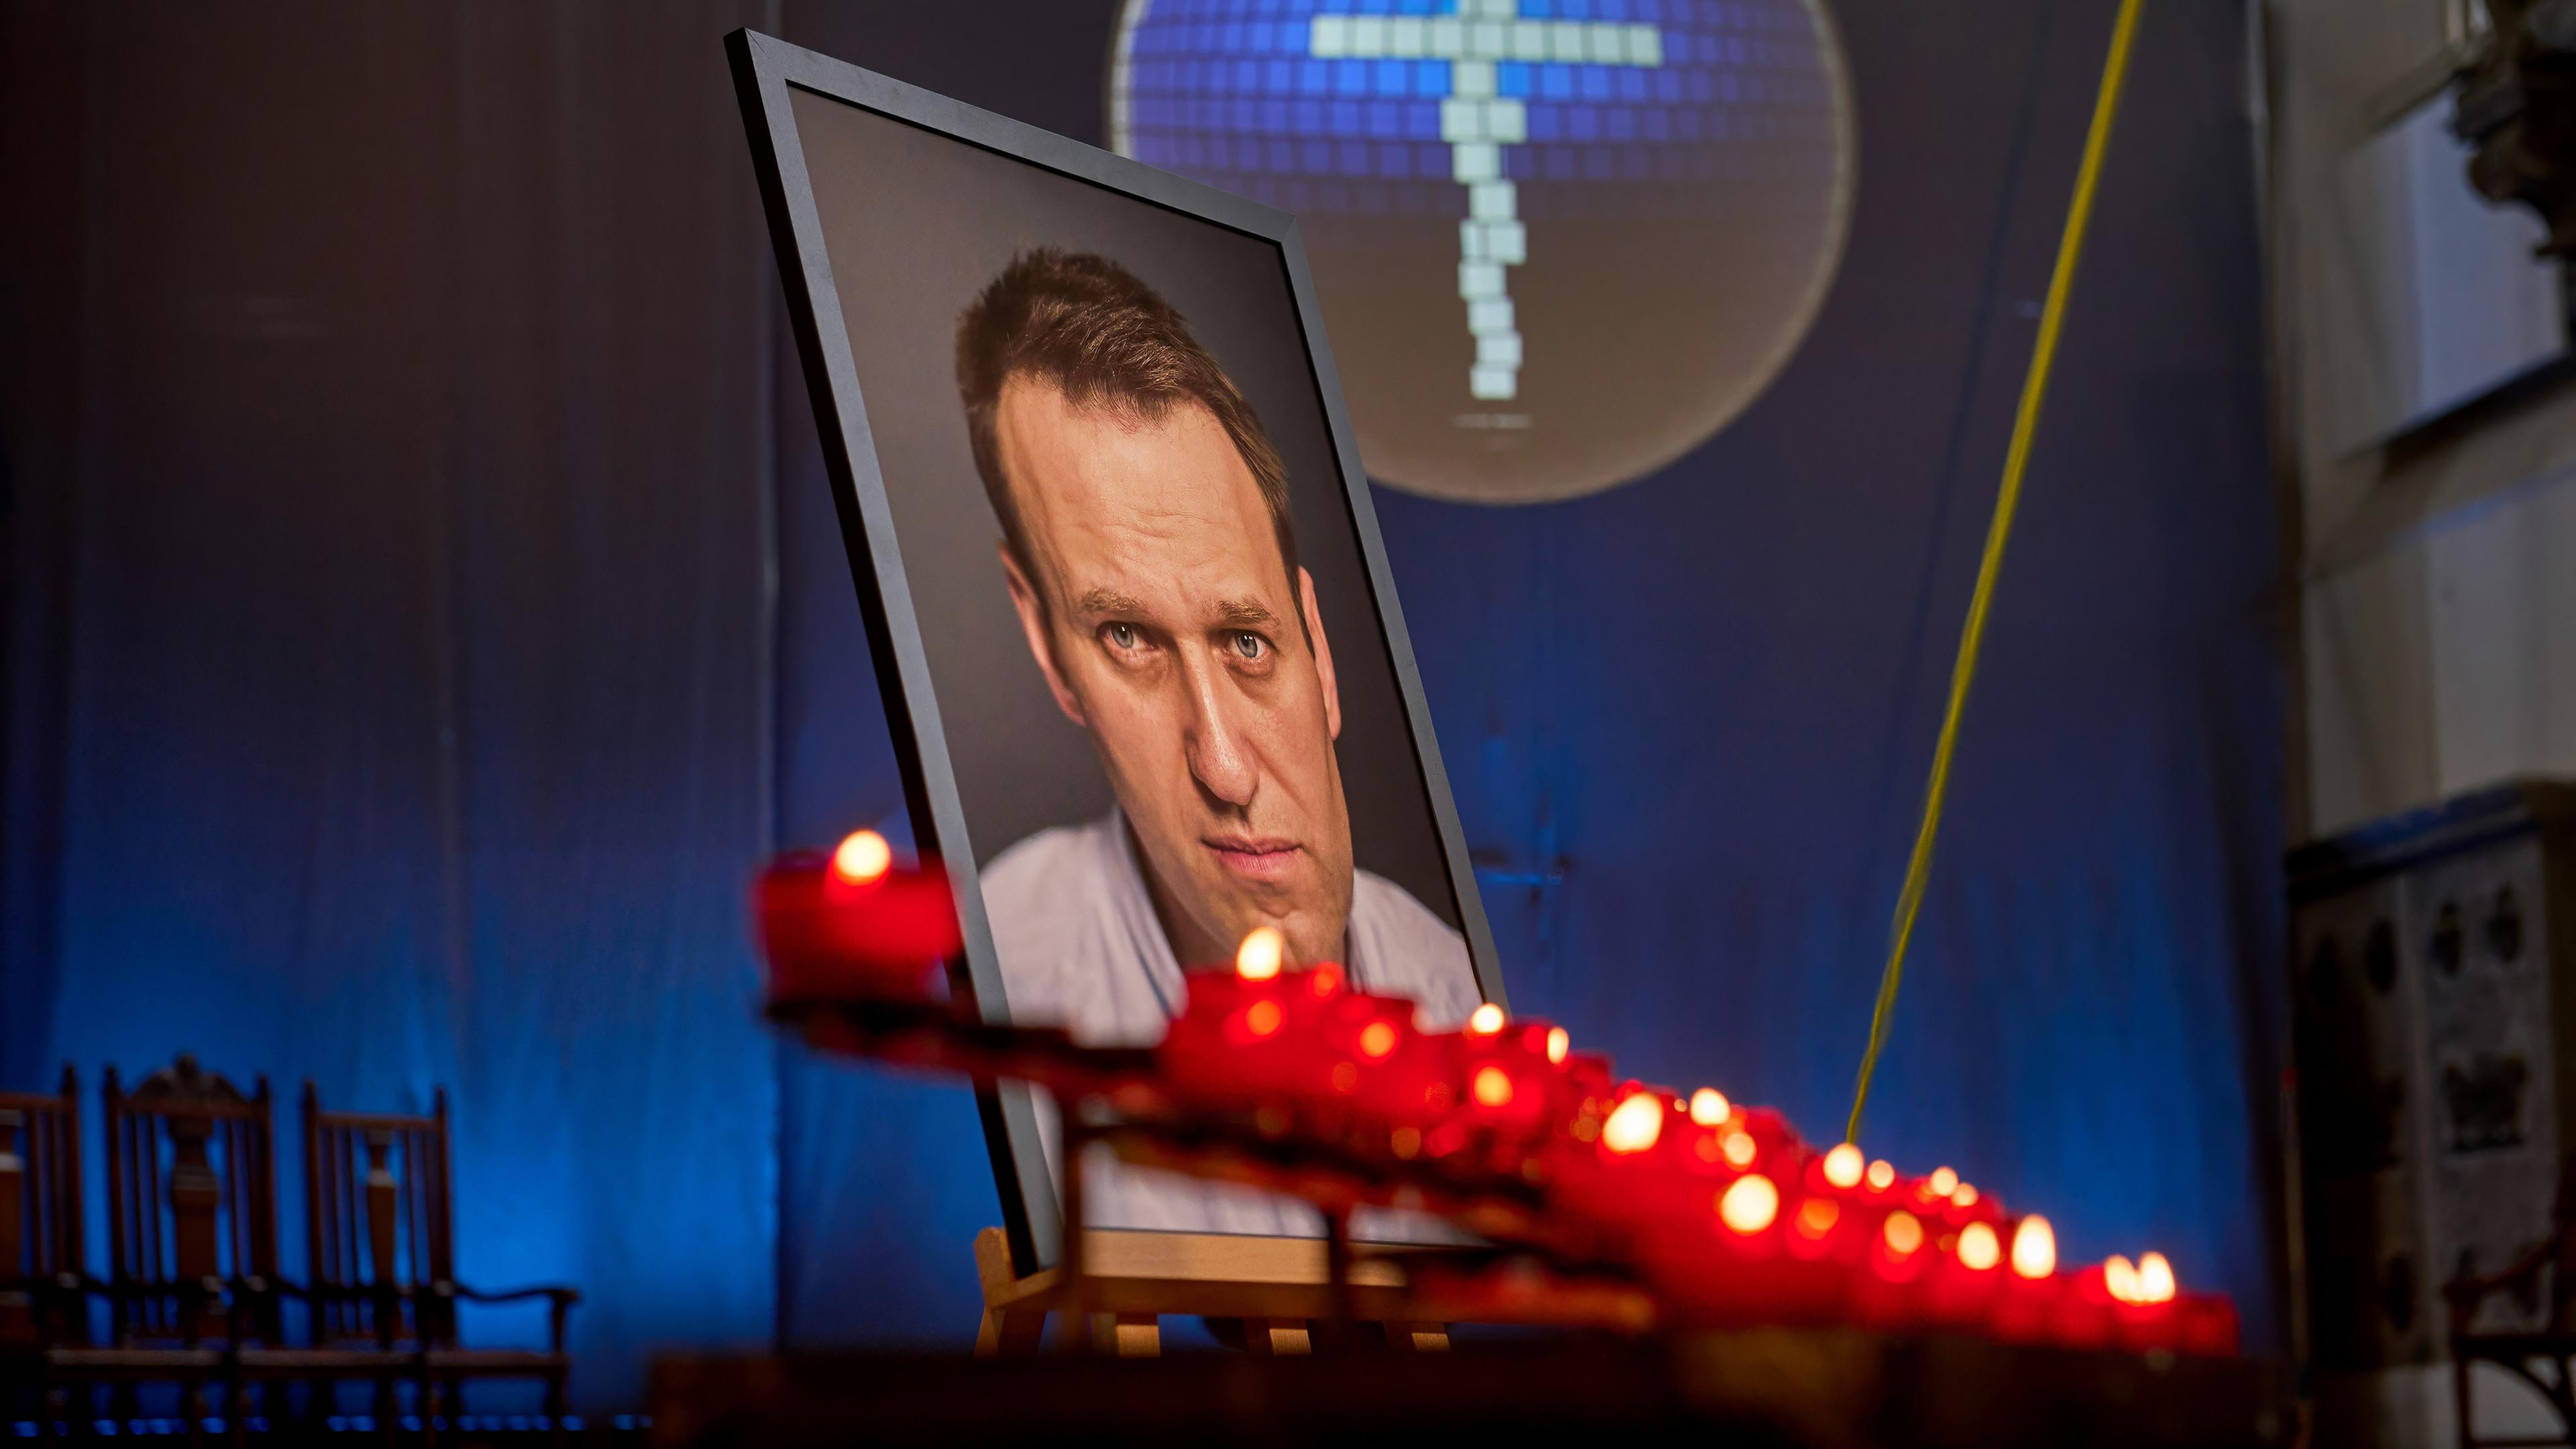 Vor dem Porträtfoto eines Mannes in einem großen Rahmen brennen Votivkerzen. Im Hintergrund ist ein Kreuz zu sehen.